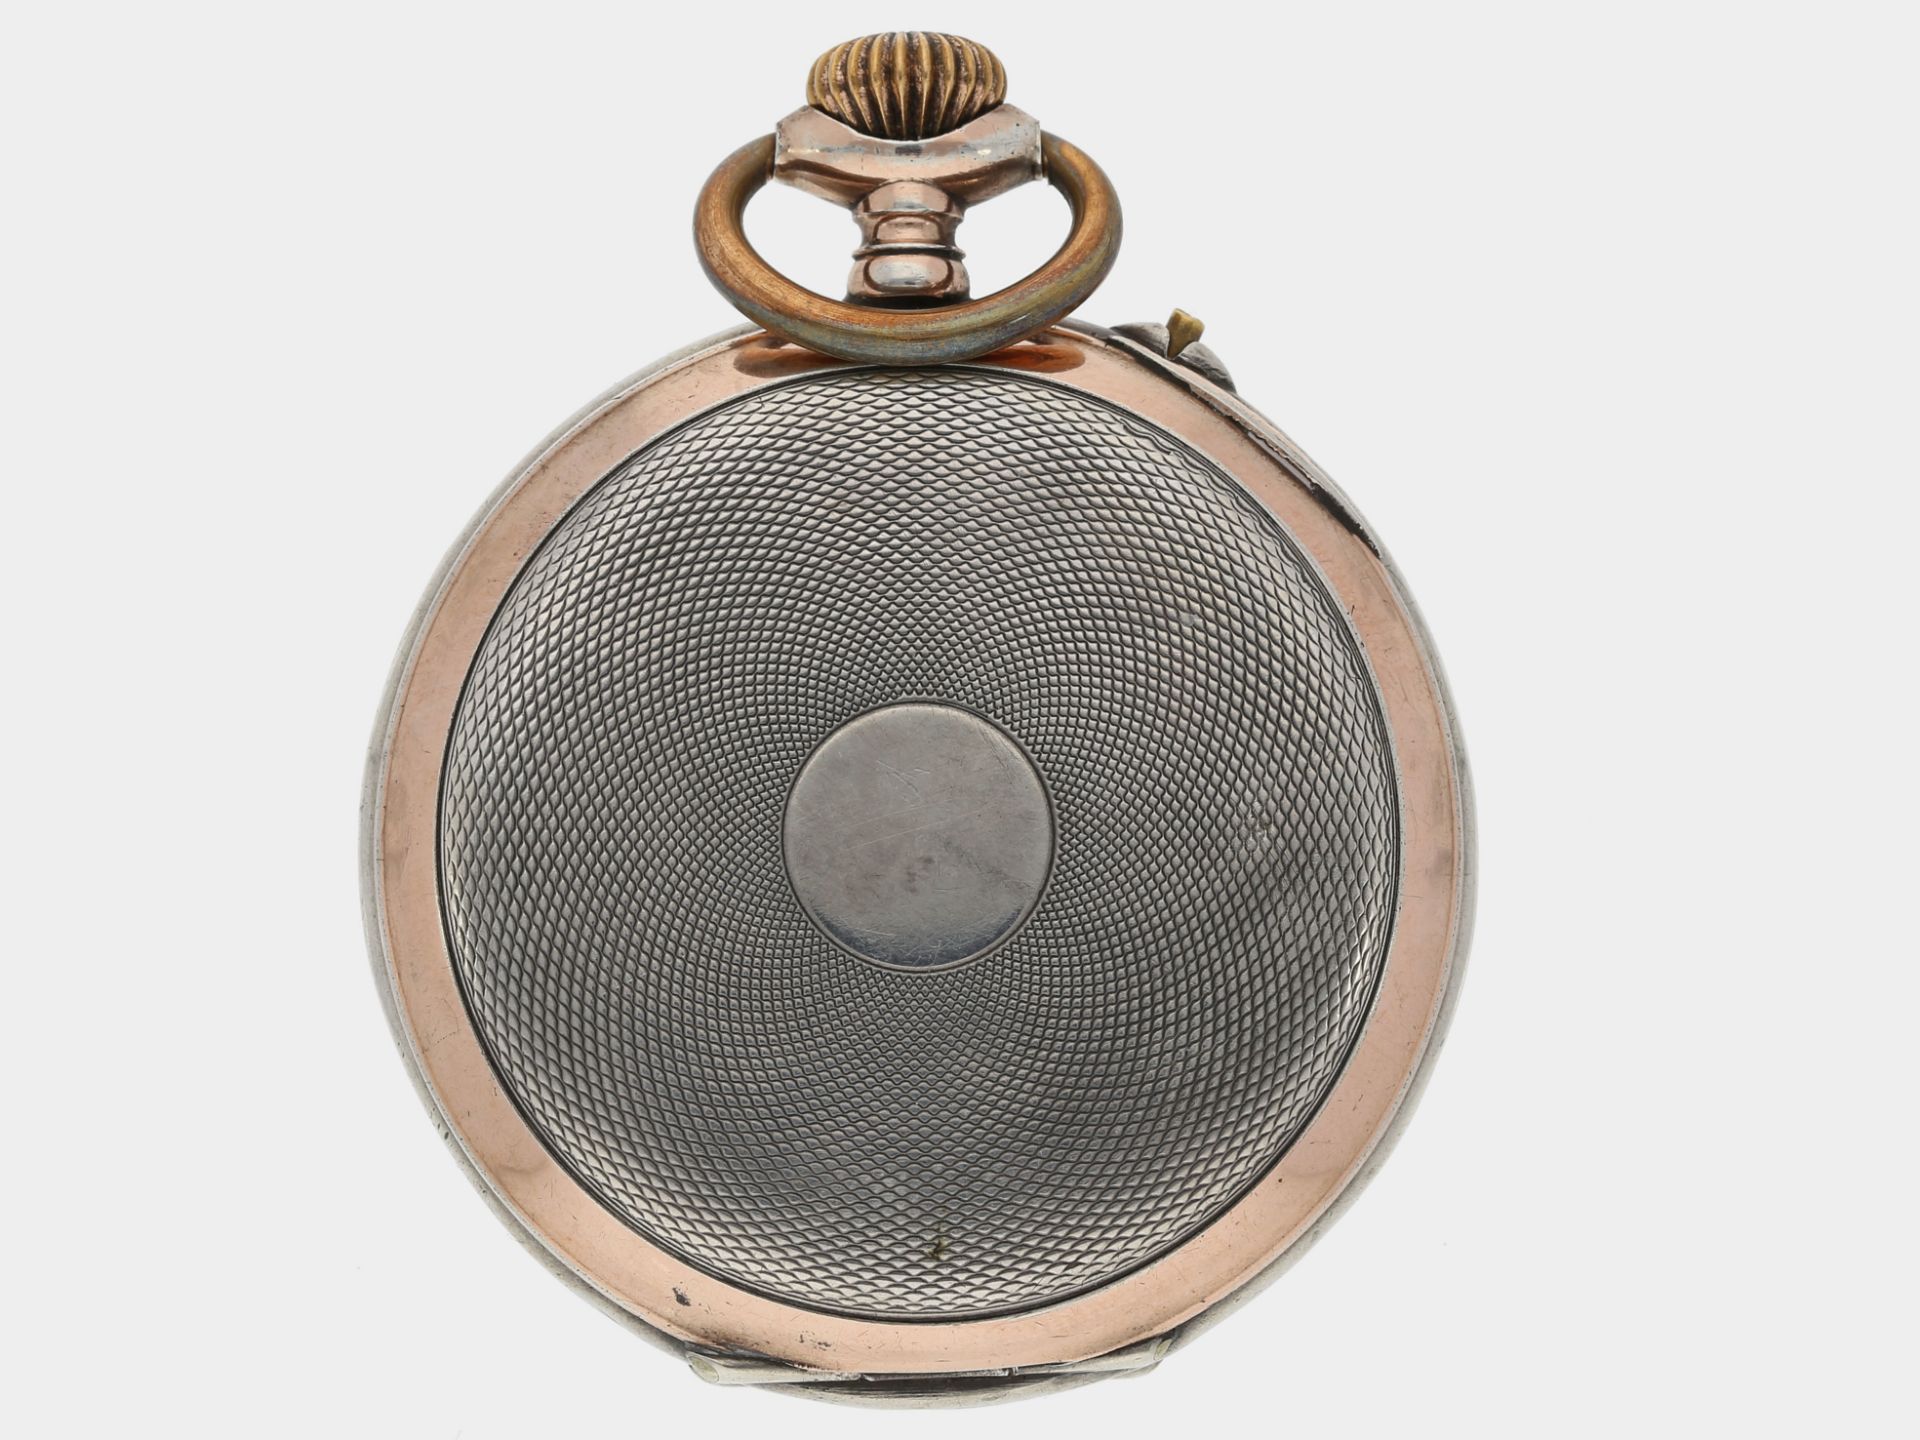 Taschenuhr: komplizierte astronomische Taschenuhr mit Vollkalender und Mondphase, Roskopf ca. 1900 - Bild 2 aus 4